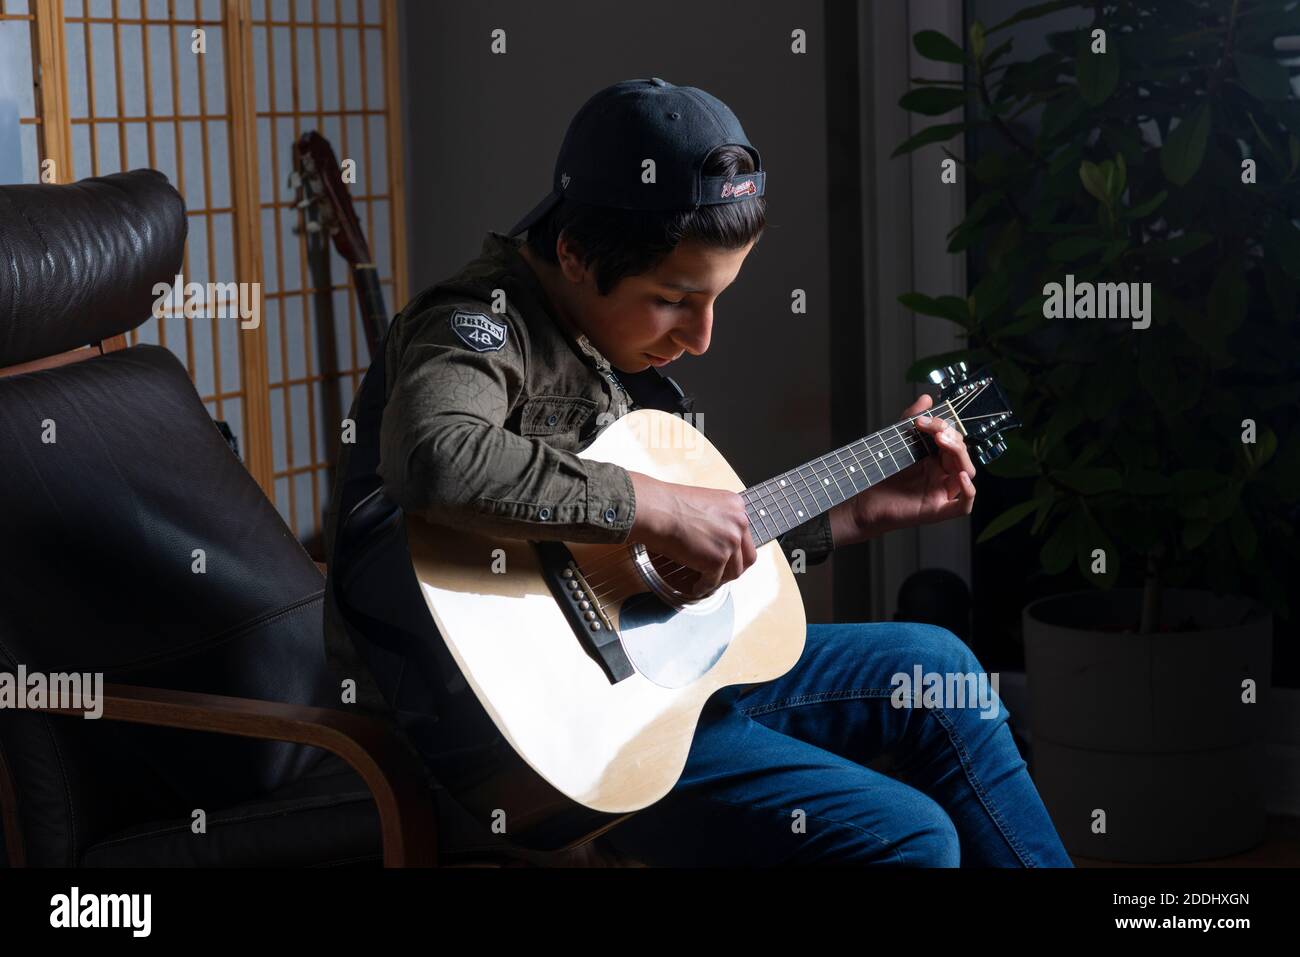 Adolescente, de 14 años, toca una guitarra acústica en casa, Reino Unido Foto de stock